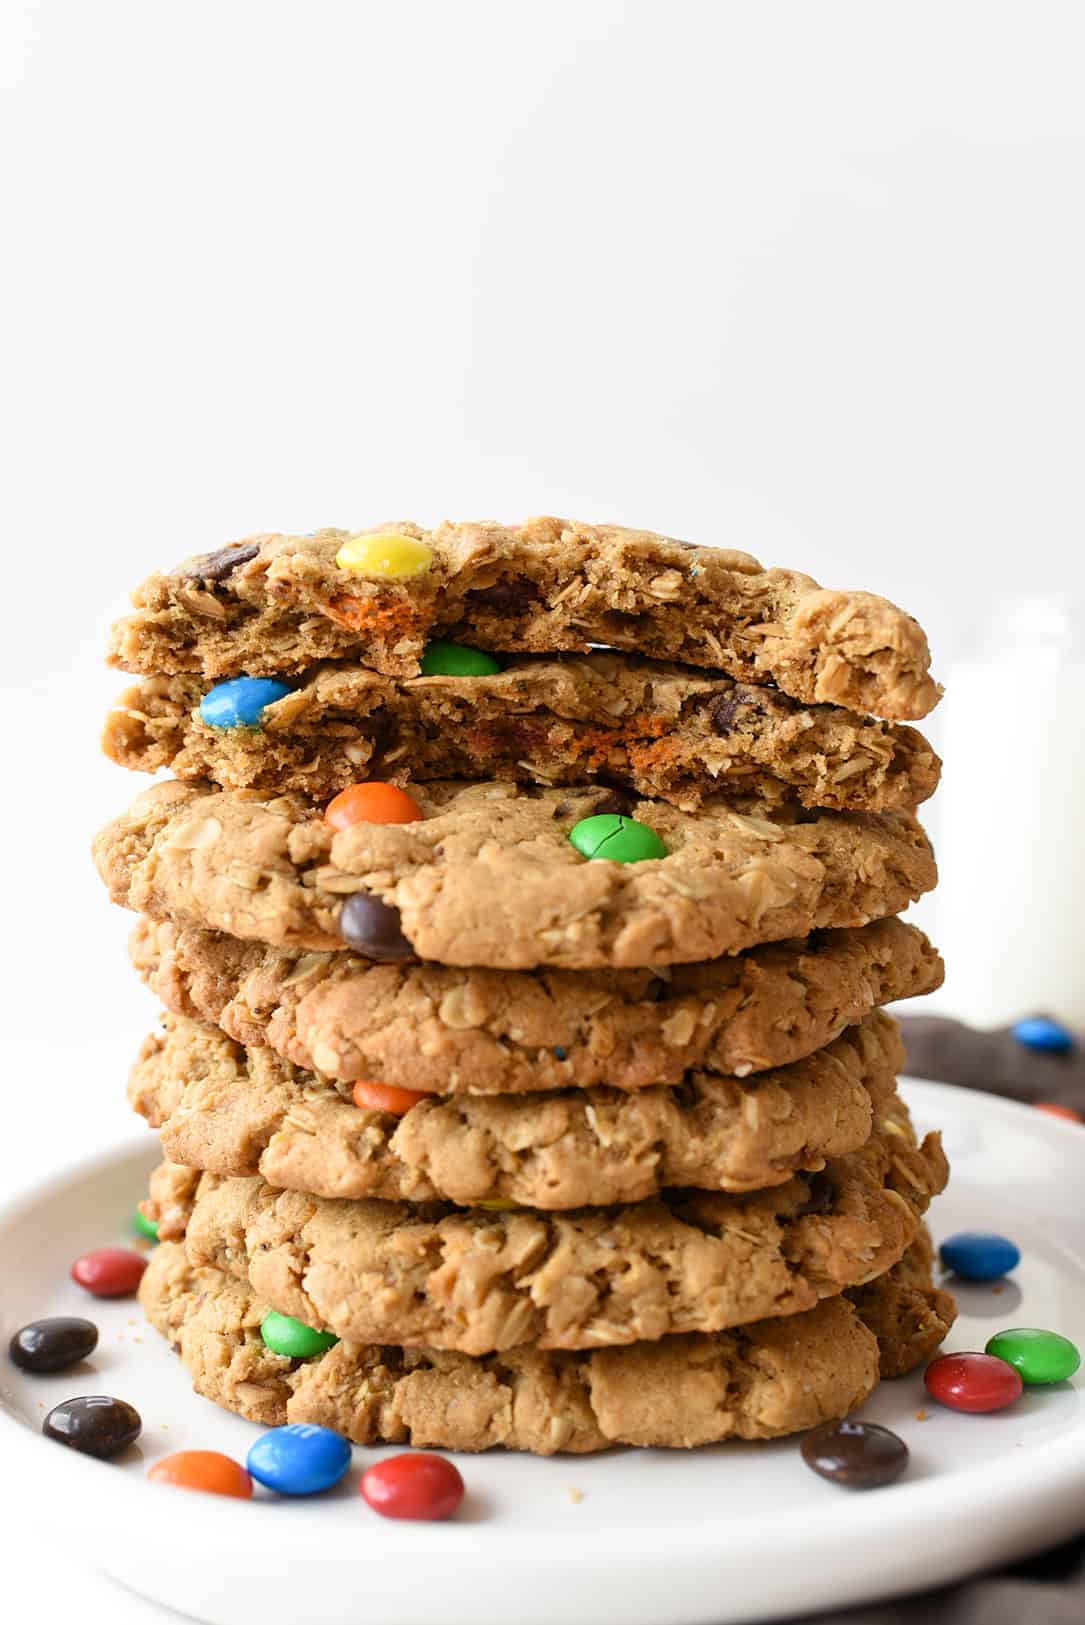 Monster Cookie Recipe Stacked and Top Cookie Broken in Half